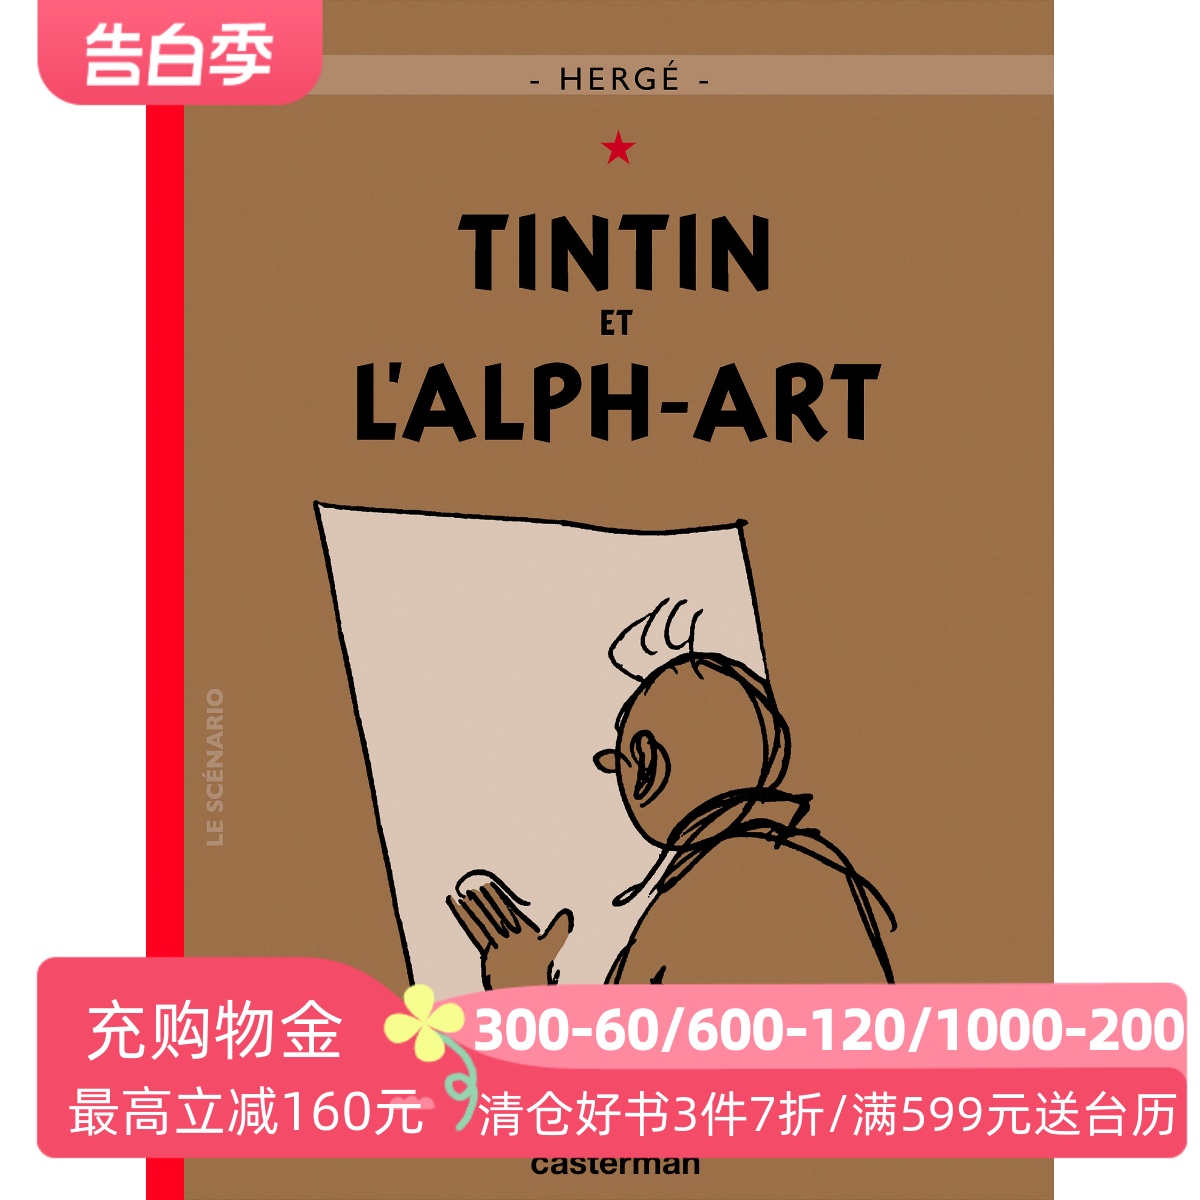 现货 法语原版 丁丁历险记 丁丁与字母艺术 精装大开本 收藏纪念版 Les Aventures de Tintin Tintin et l’alph-art